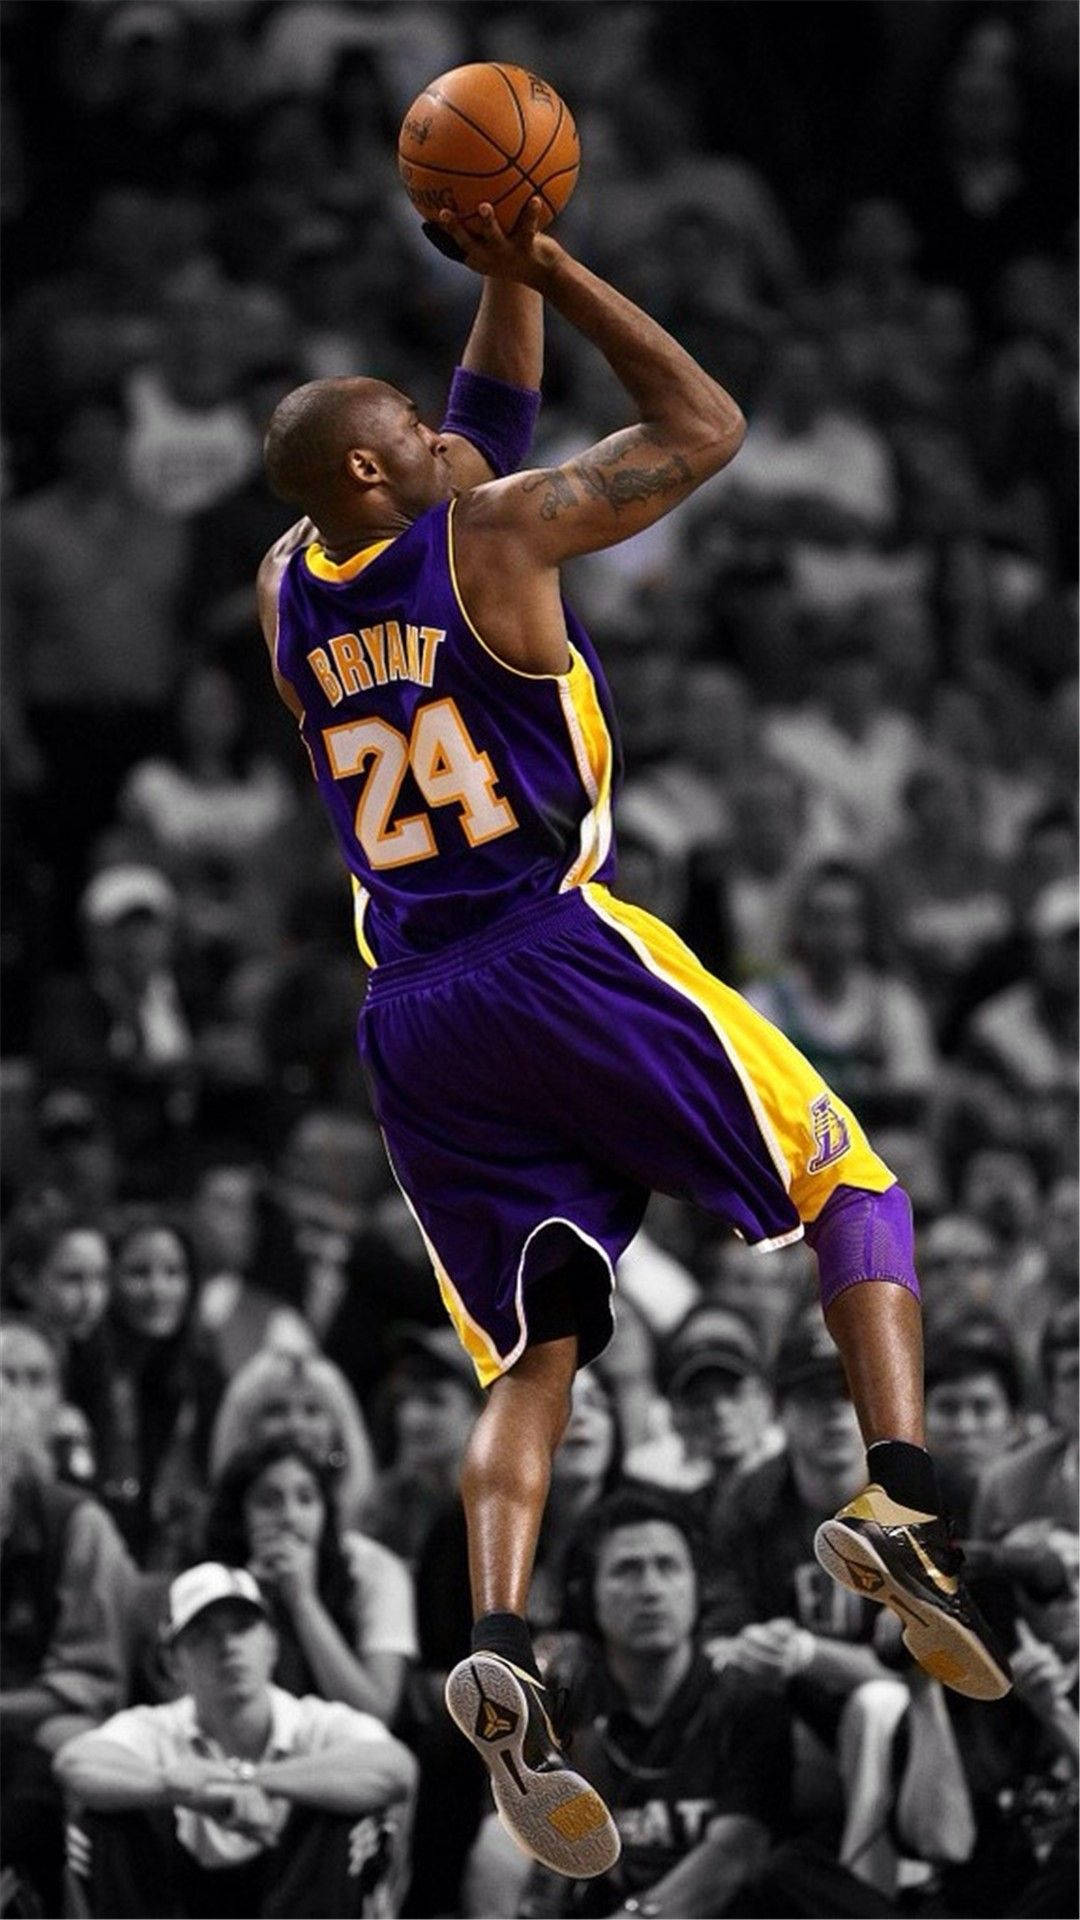 Làm mới màn hình điện thoại của bạn với hình nền Kobe Bryant cực đẹp cho iPhone. Hãy để hình ảnh của danh thủ bóng rổ này trở thành nguồn cảm hứng cho người dùng. 